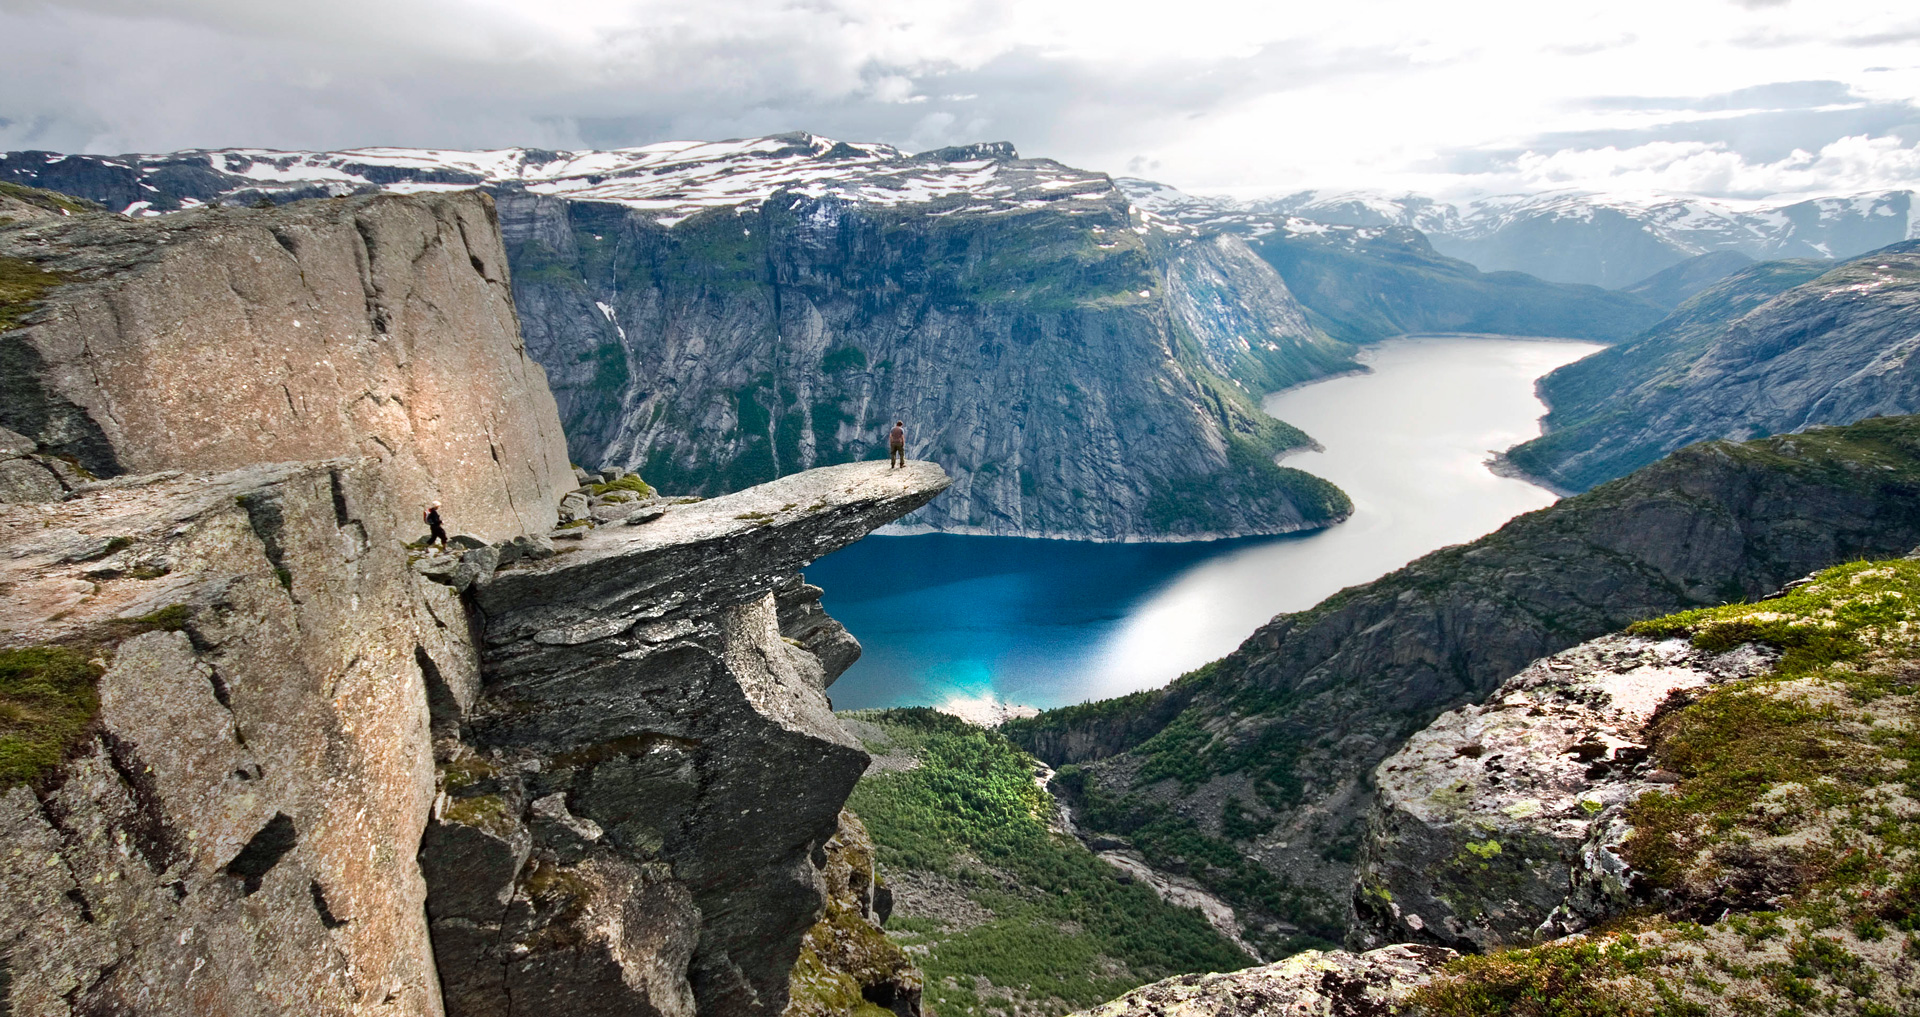 Birdbox Norvegia, le cabine panoramiche nella natura contaminata!